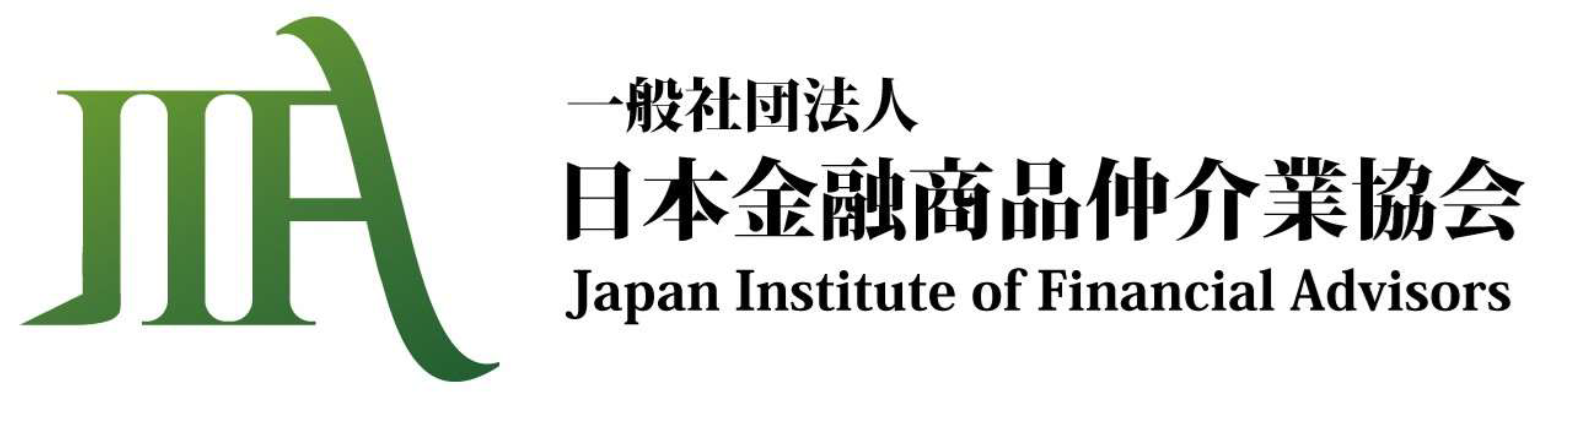 一般社団法人 日本金融商品仲介業協会